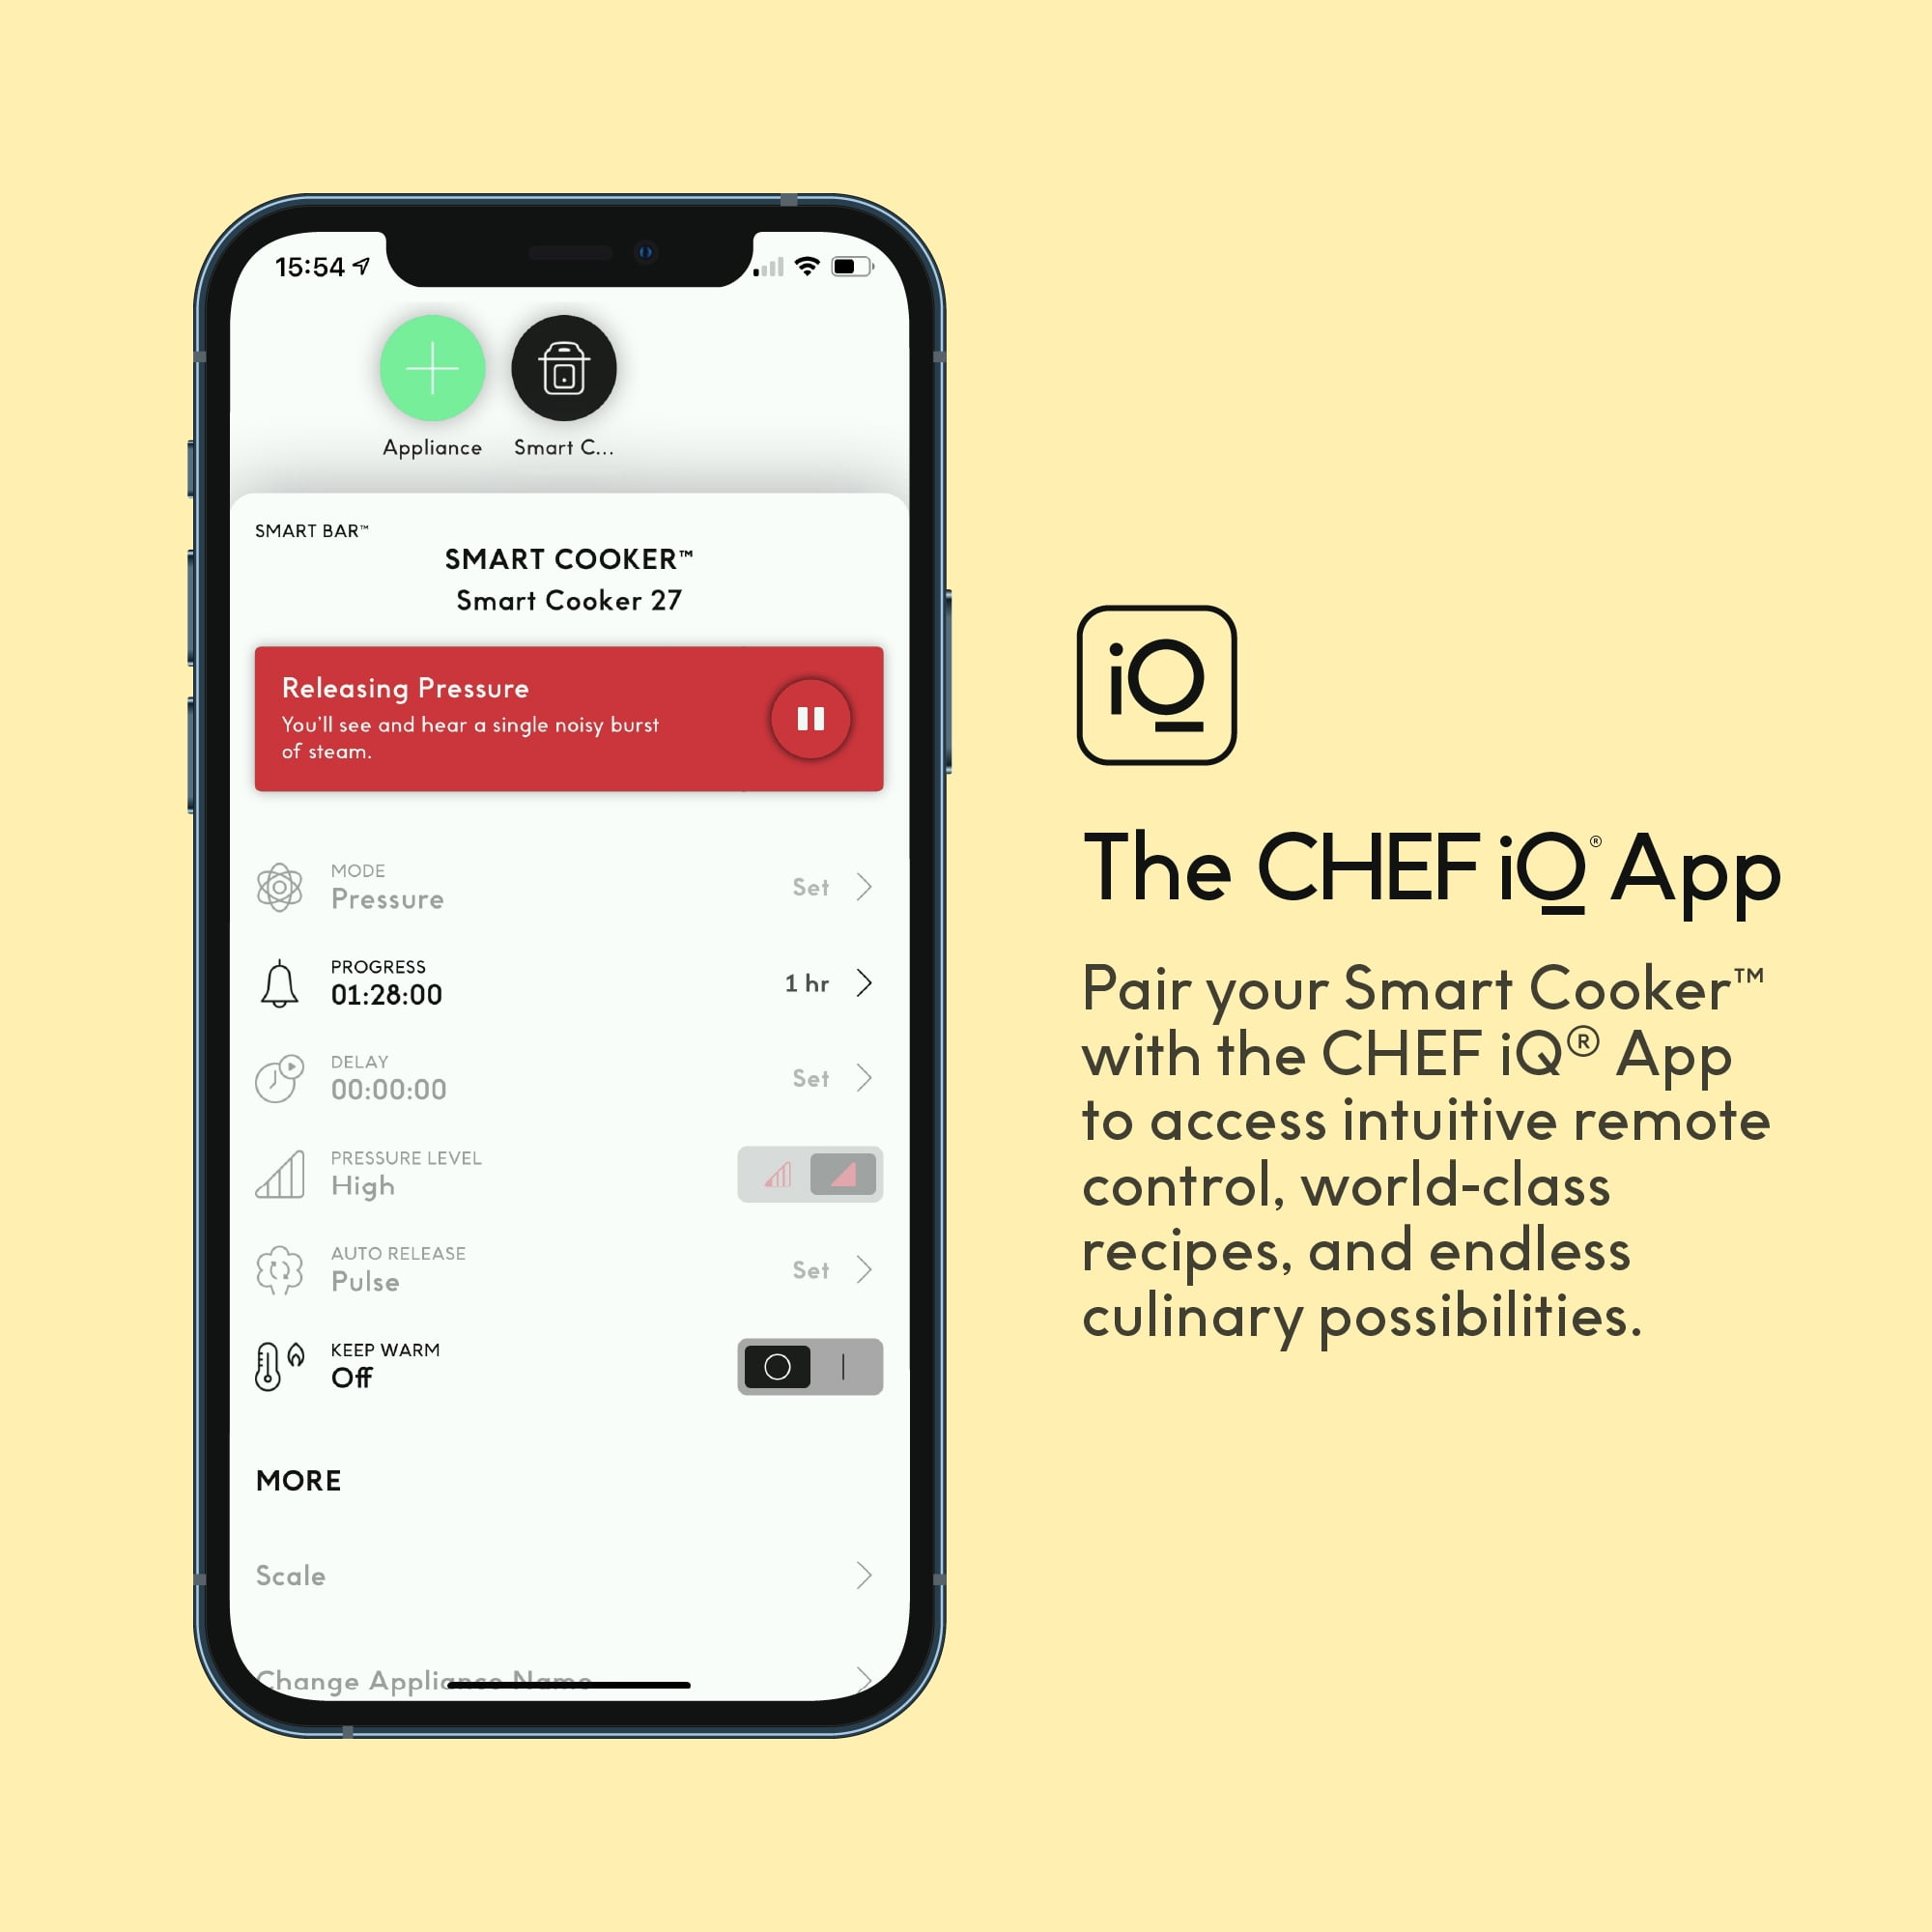 CHEF iQ Smart Cooker - The World's Smartest Pressure Cooker w. WiFi